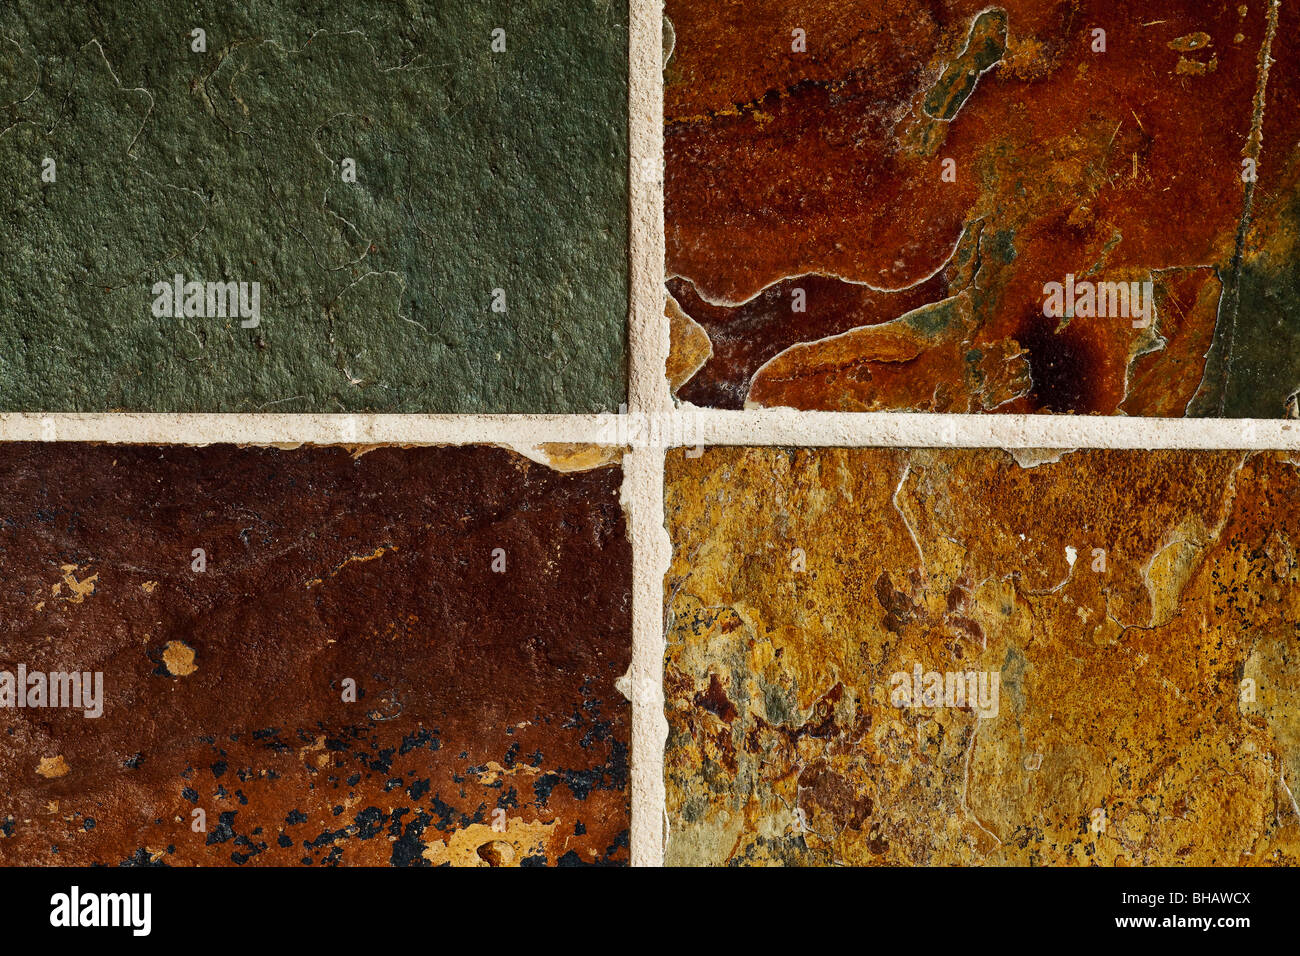 Schiefer Naturstein Bodenbelag Fliesen abstrakten Hintergrund Stockfoto